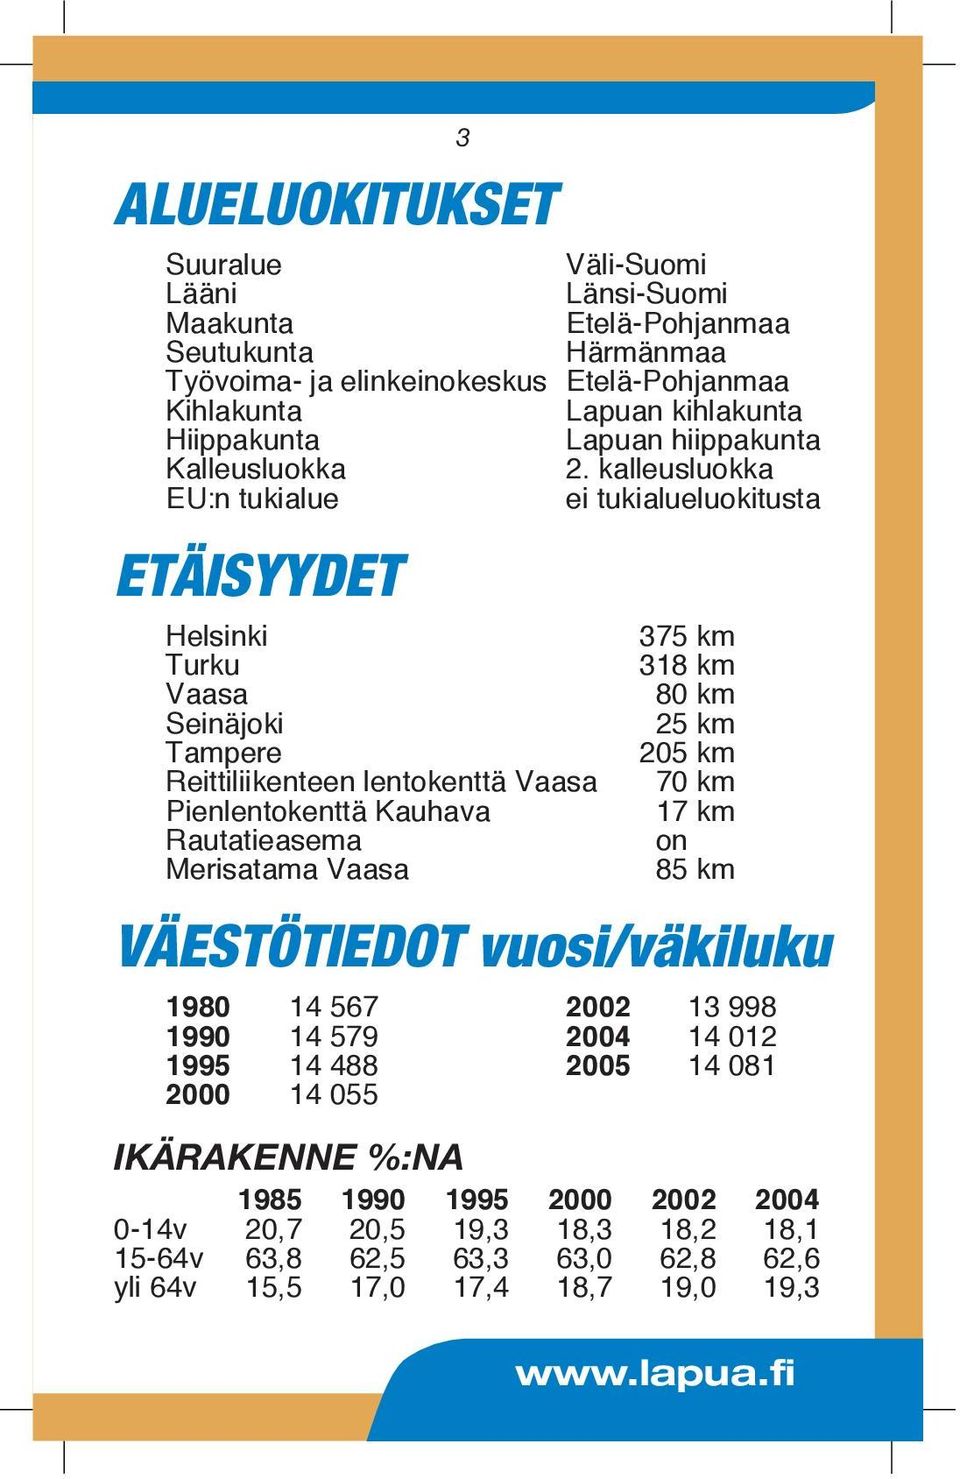 kalleusluokka EU:n tukialue ei tukialueluokitusta ETÄISYYDET Helsinki 375 km Turku 318 km Vaasa 80 km Seinäjoki 25 km Tampere 205 km Reittiliikenteen lentokenttä Vaasa 70 km